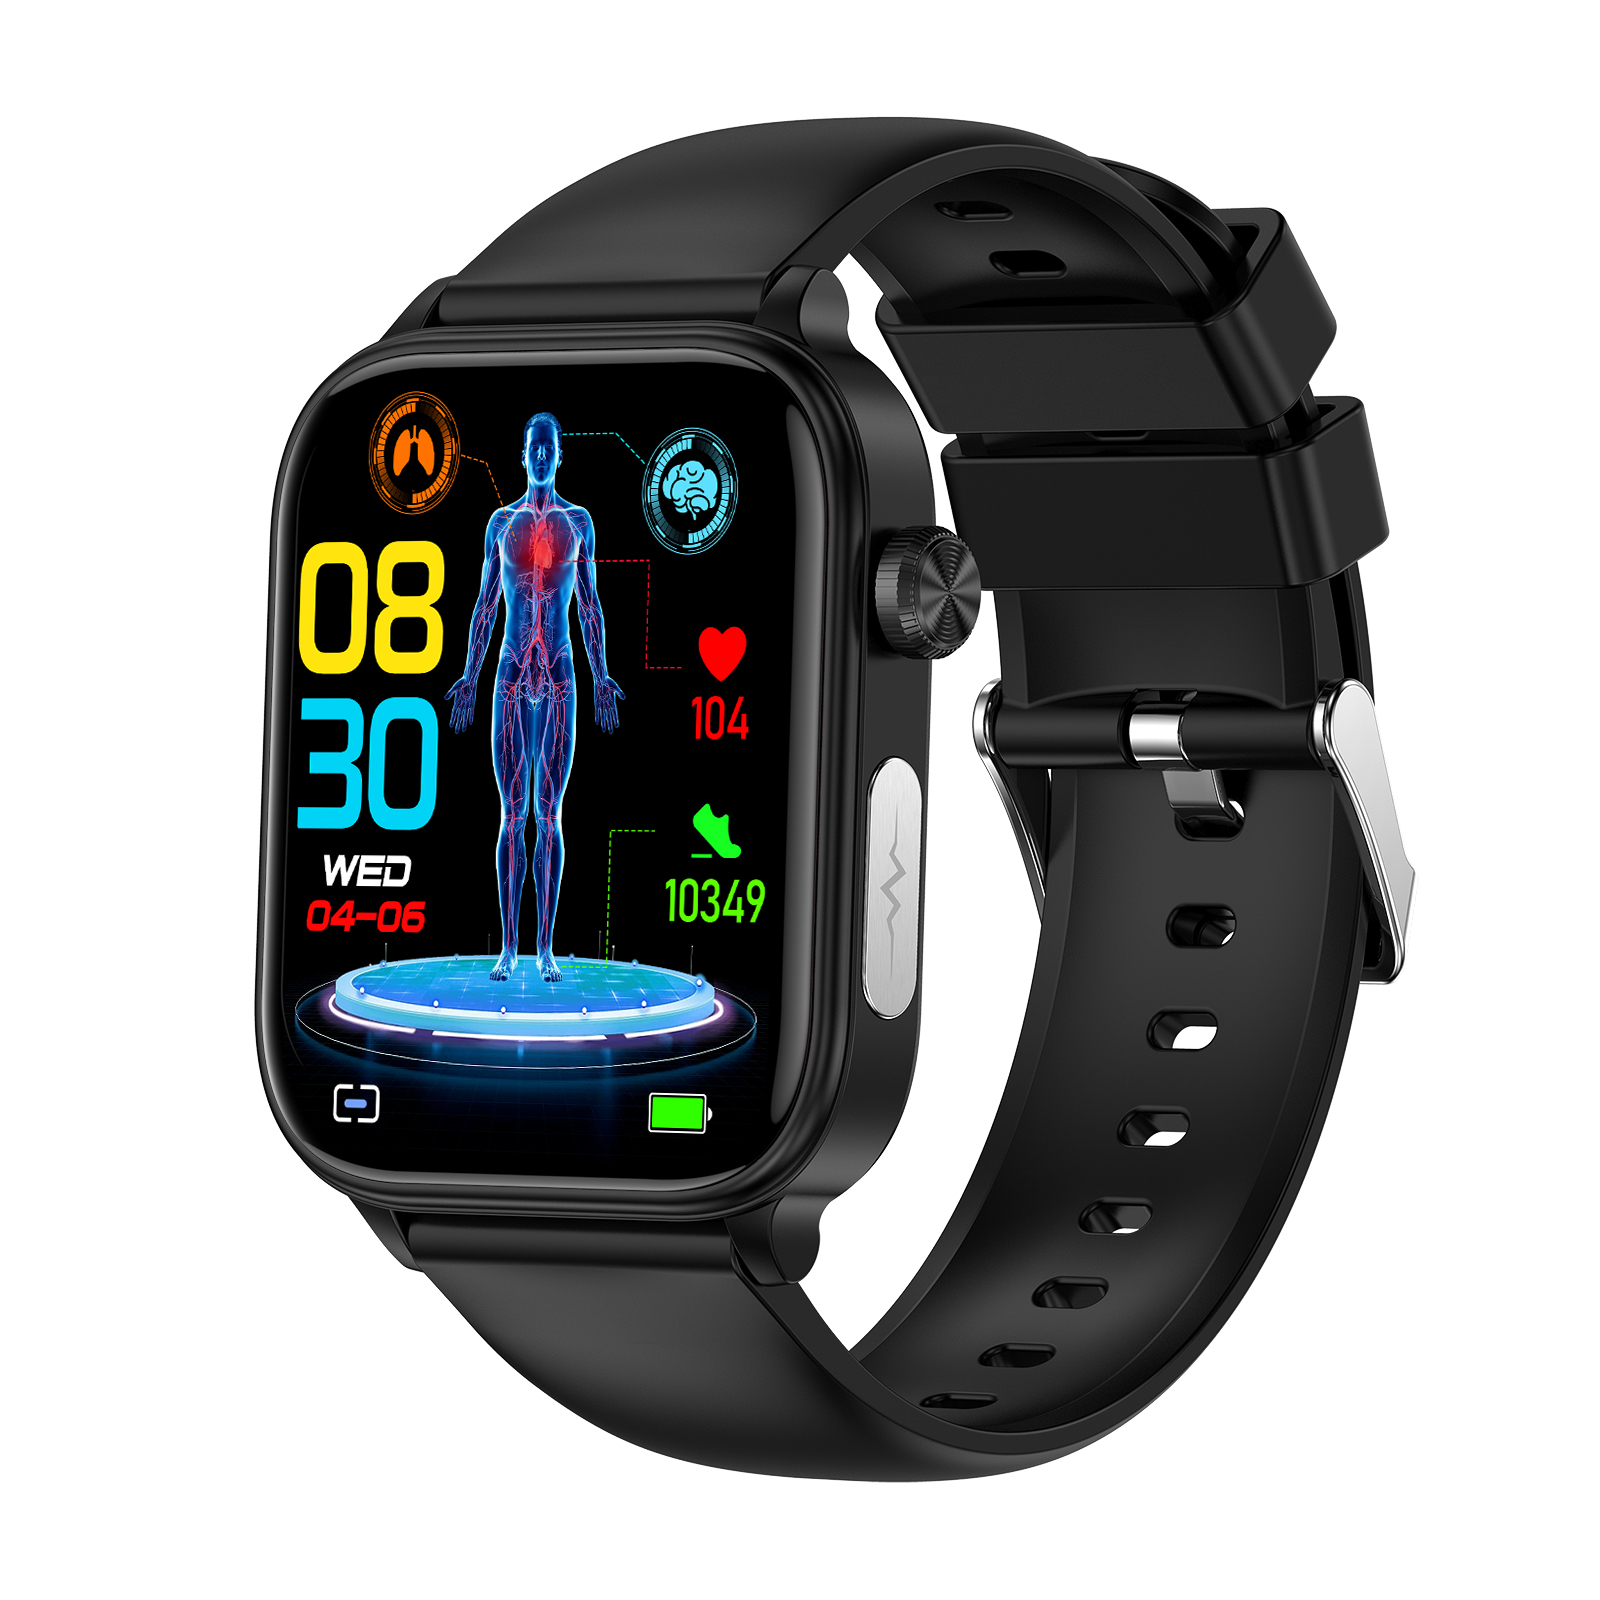 Không xâm lấn đường huyết lipid máu Uric axit ECG Đồng hồ thông minh huyết áp cơ thể kiểm soát nhiệt độ smartwatch cho Nam Nữ cuộc gọi Bluetooth không thấm nước vòng tay thể thao et570 VS et481 et310 et210